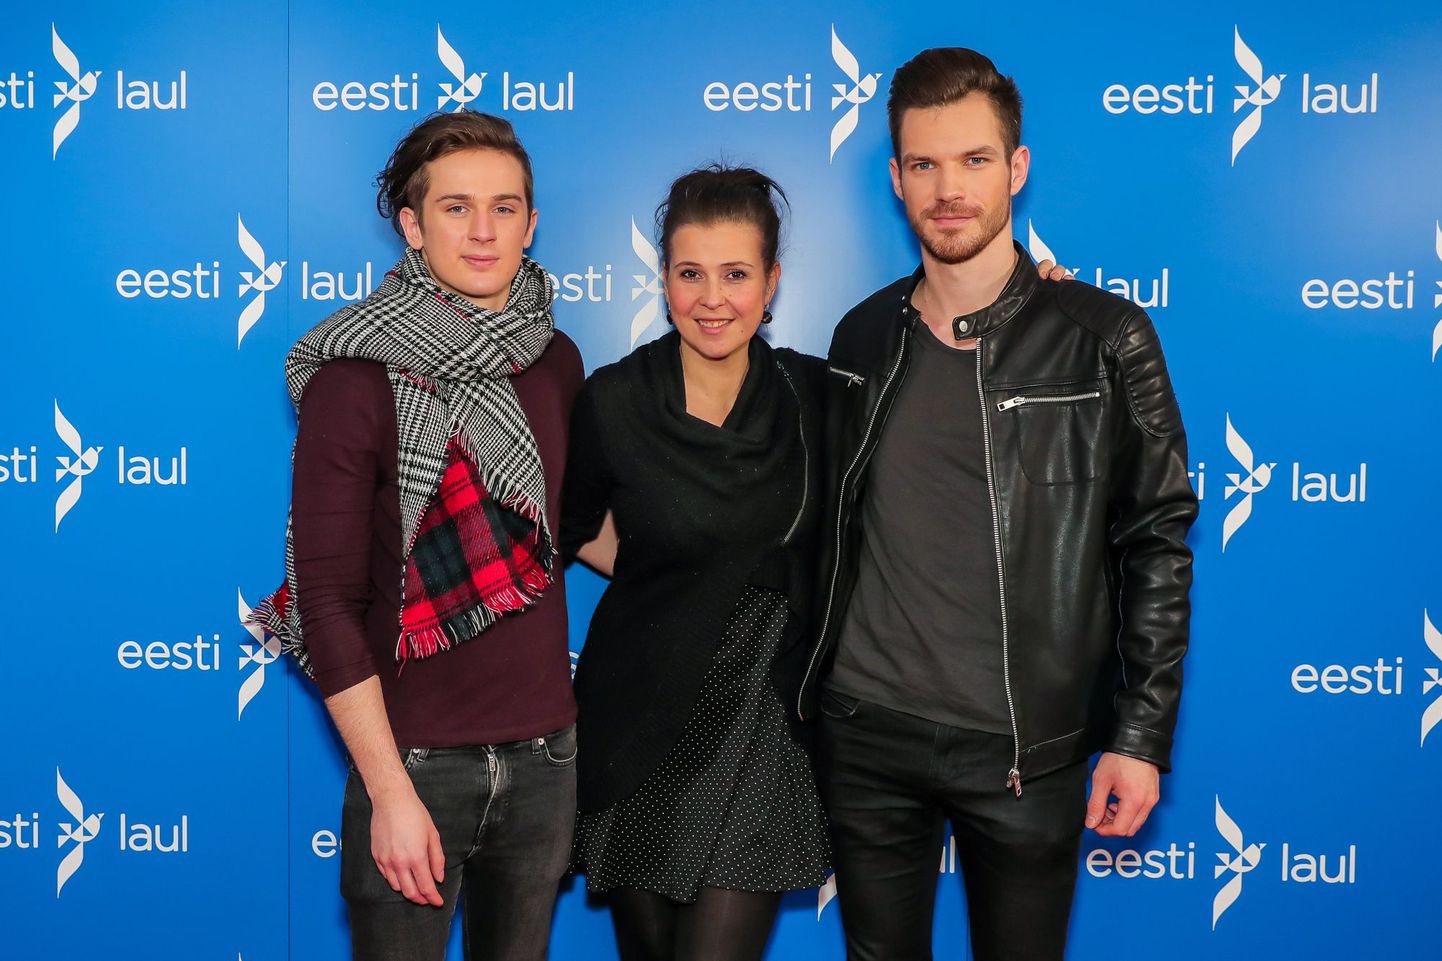 Eesti laul 2017 teise poolfinaali melu ja fotosein, Rasmus Rändvee vasakul ja Maiken keskel